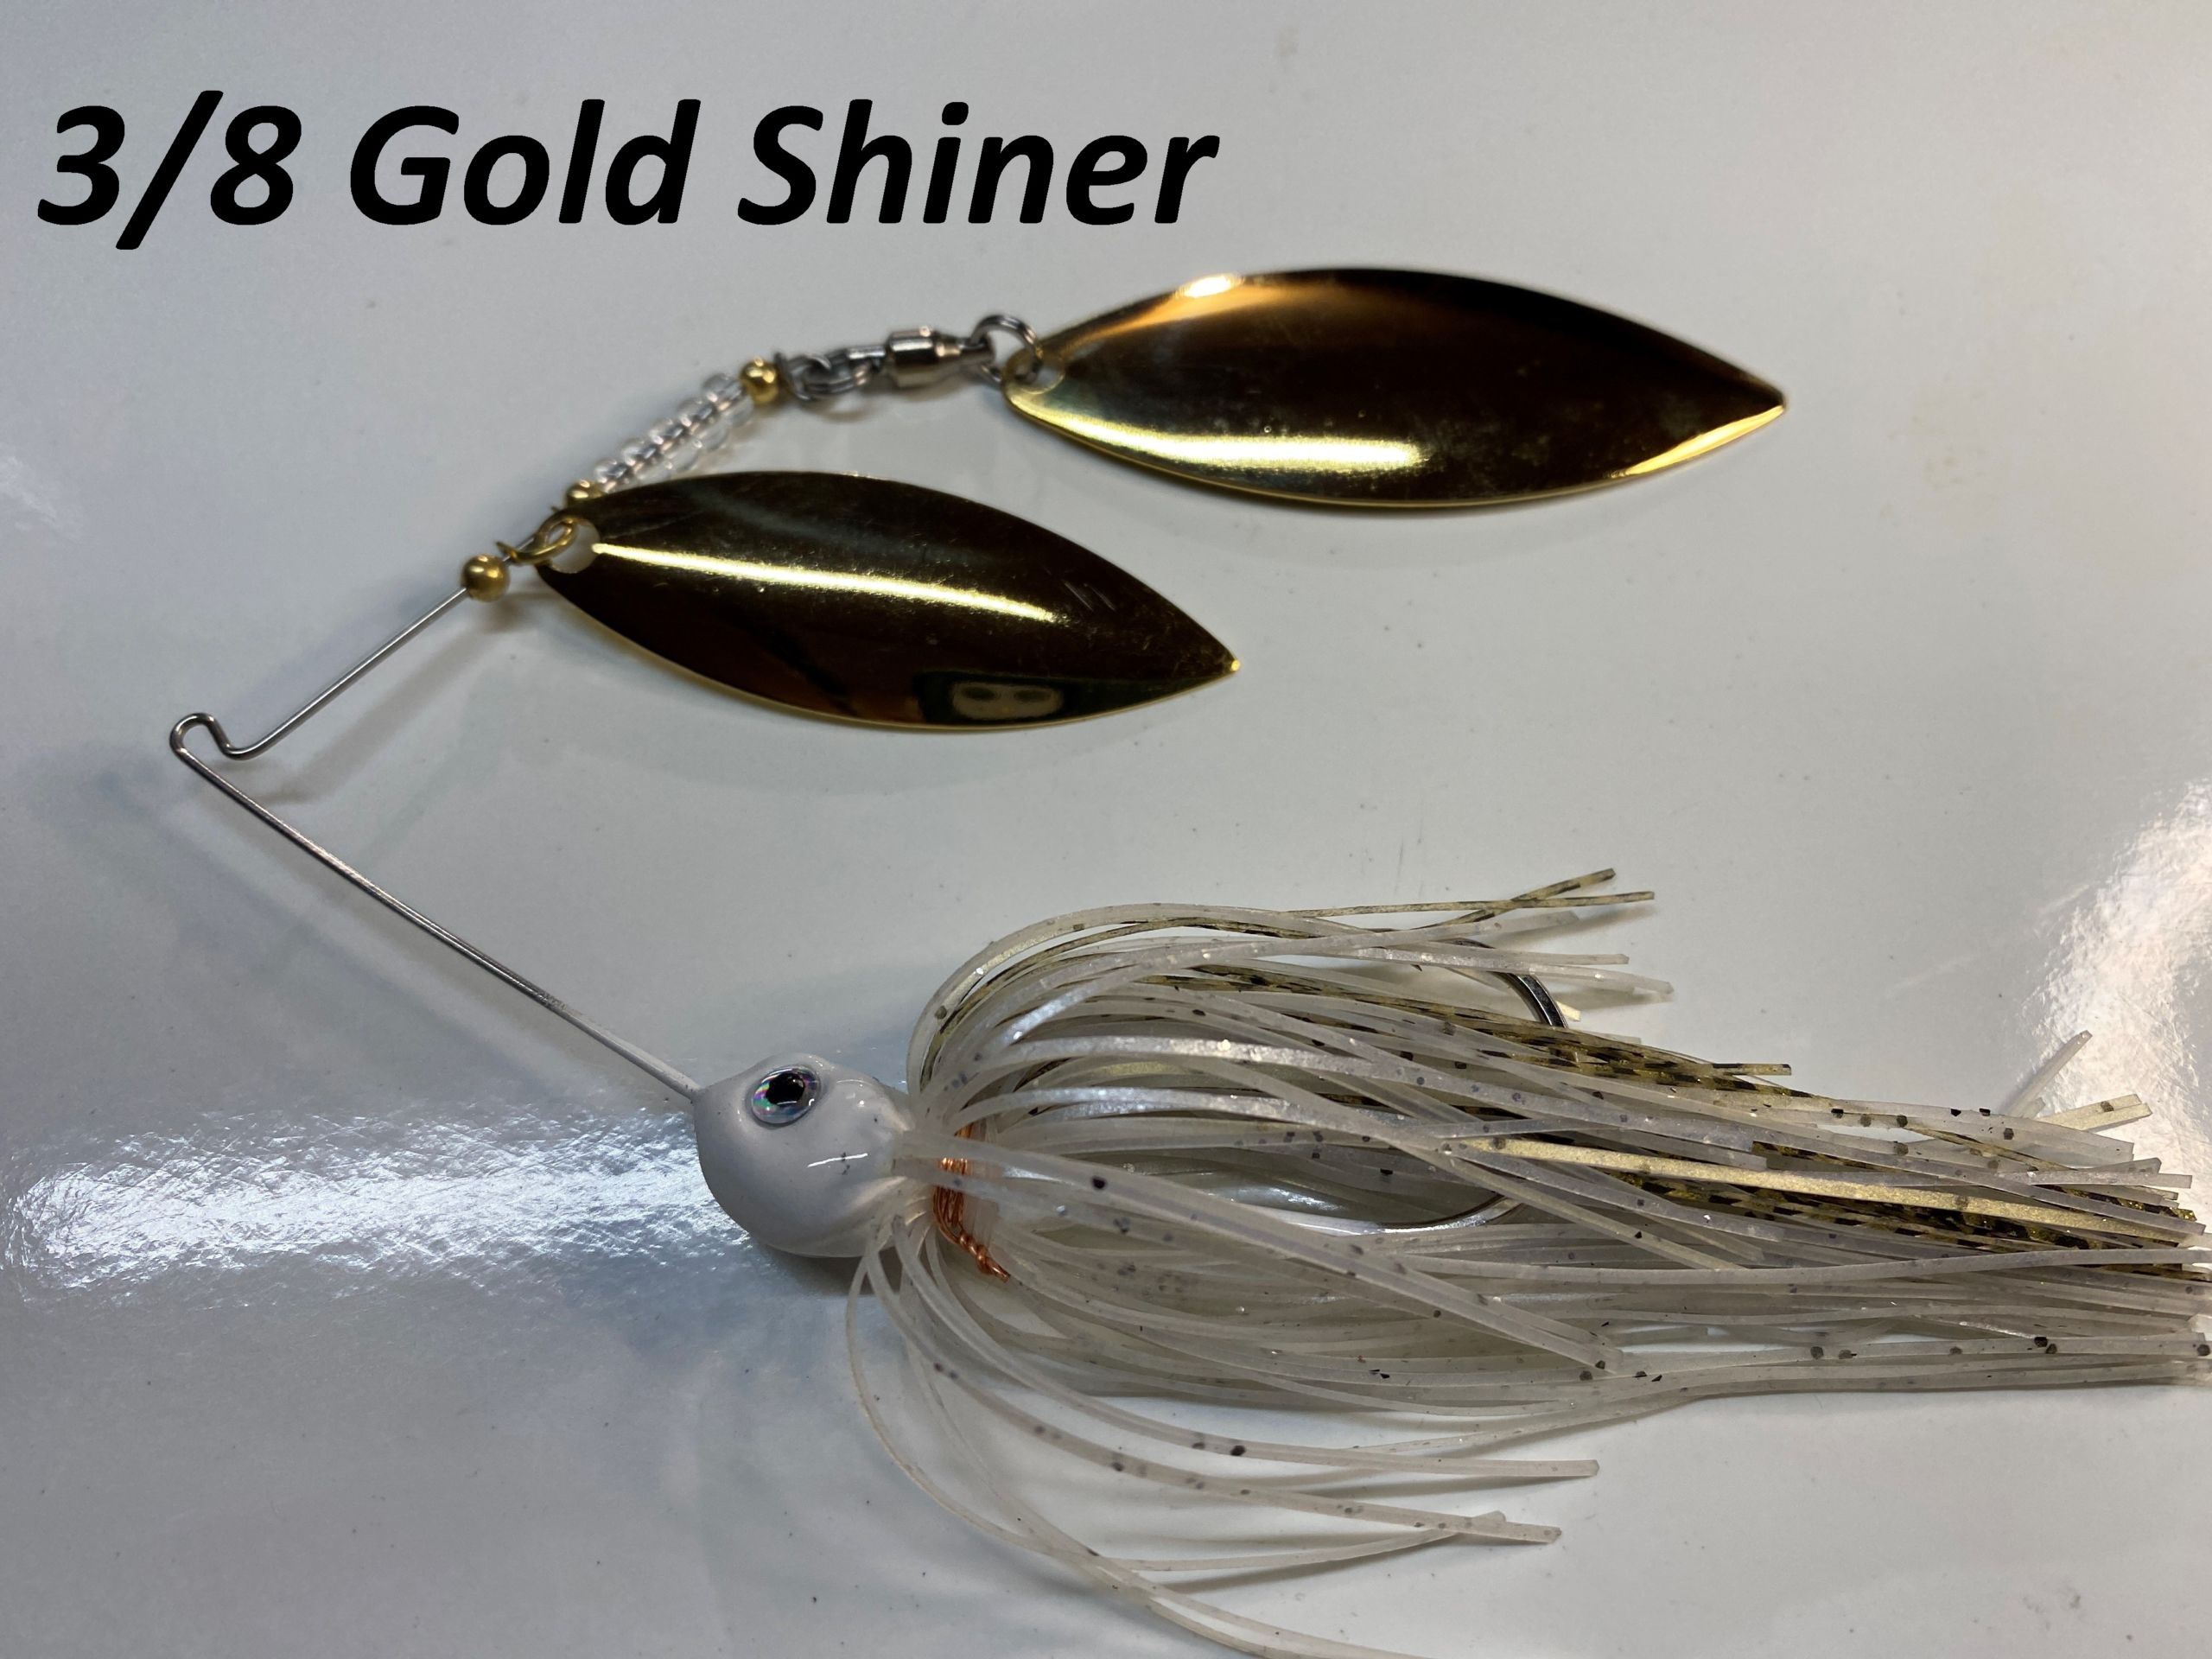 3/8 Gold Shiner – Adrenaline Tackle Company 217-502-6880